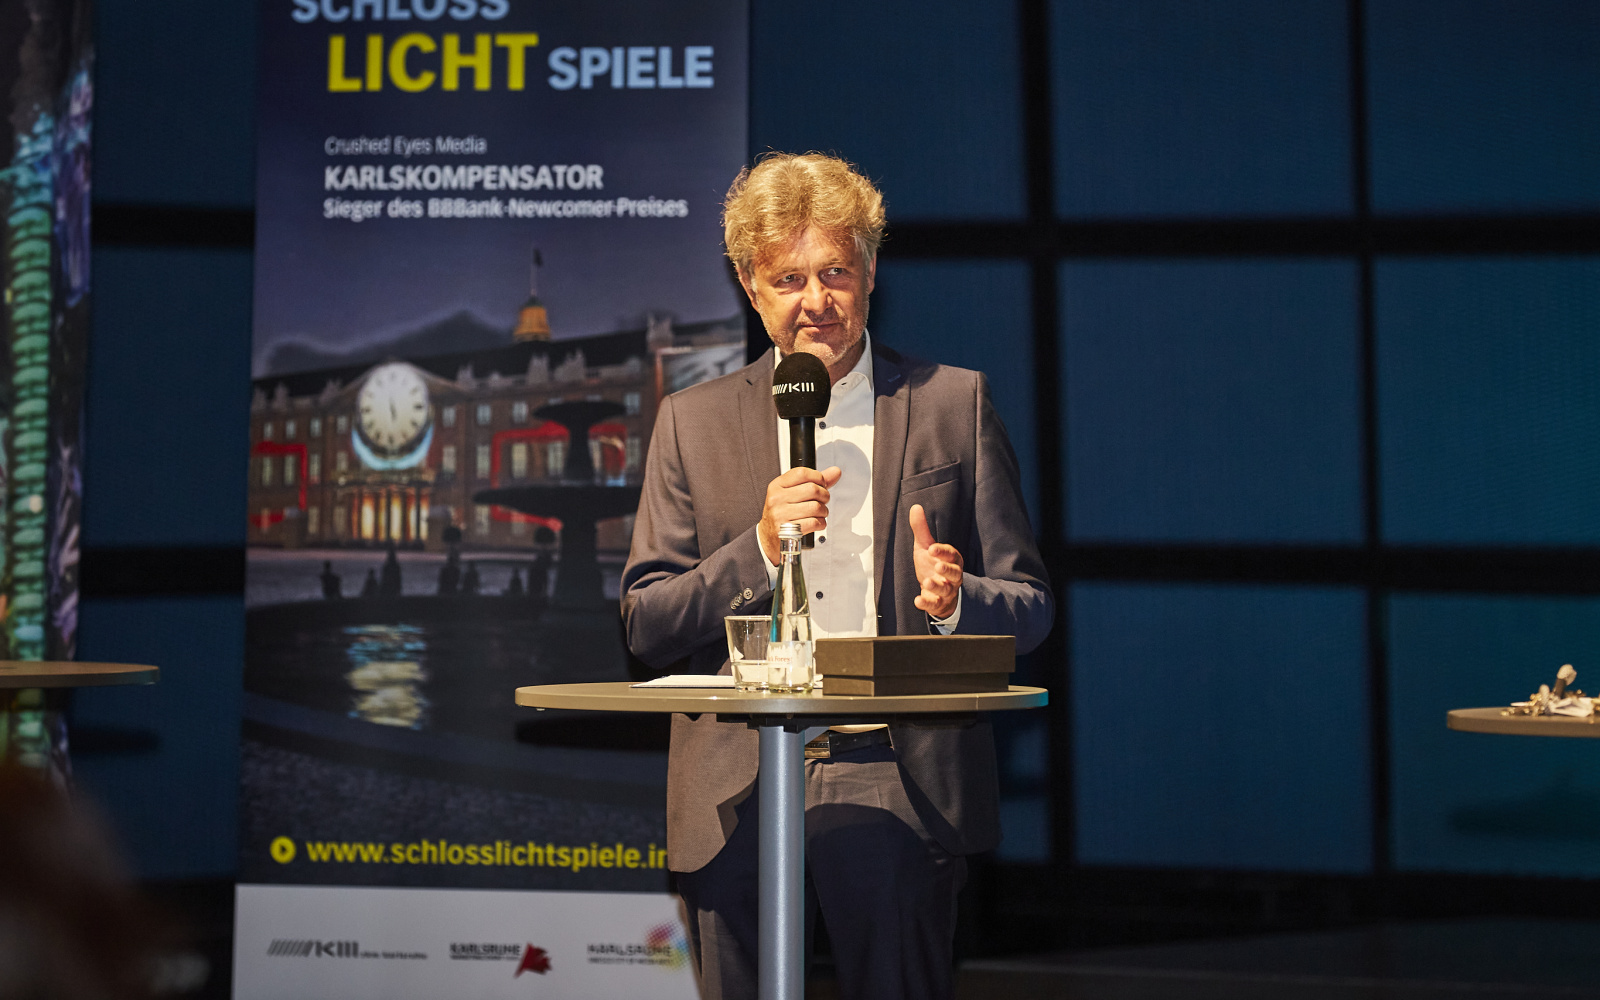 Die Pressekonferenz der Schlosslichtspiele 2021 im Medientheater des ZKM. Oberbrügermeister Dr. Frank Mentrup spricht in ein Mikrofon.